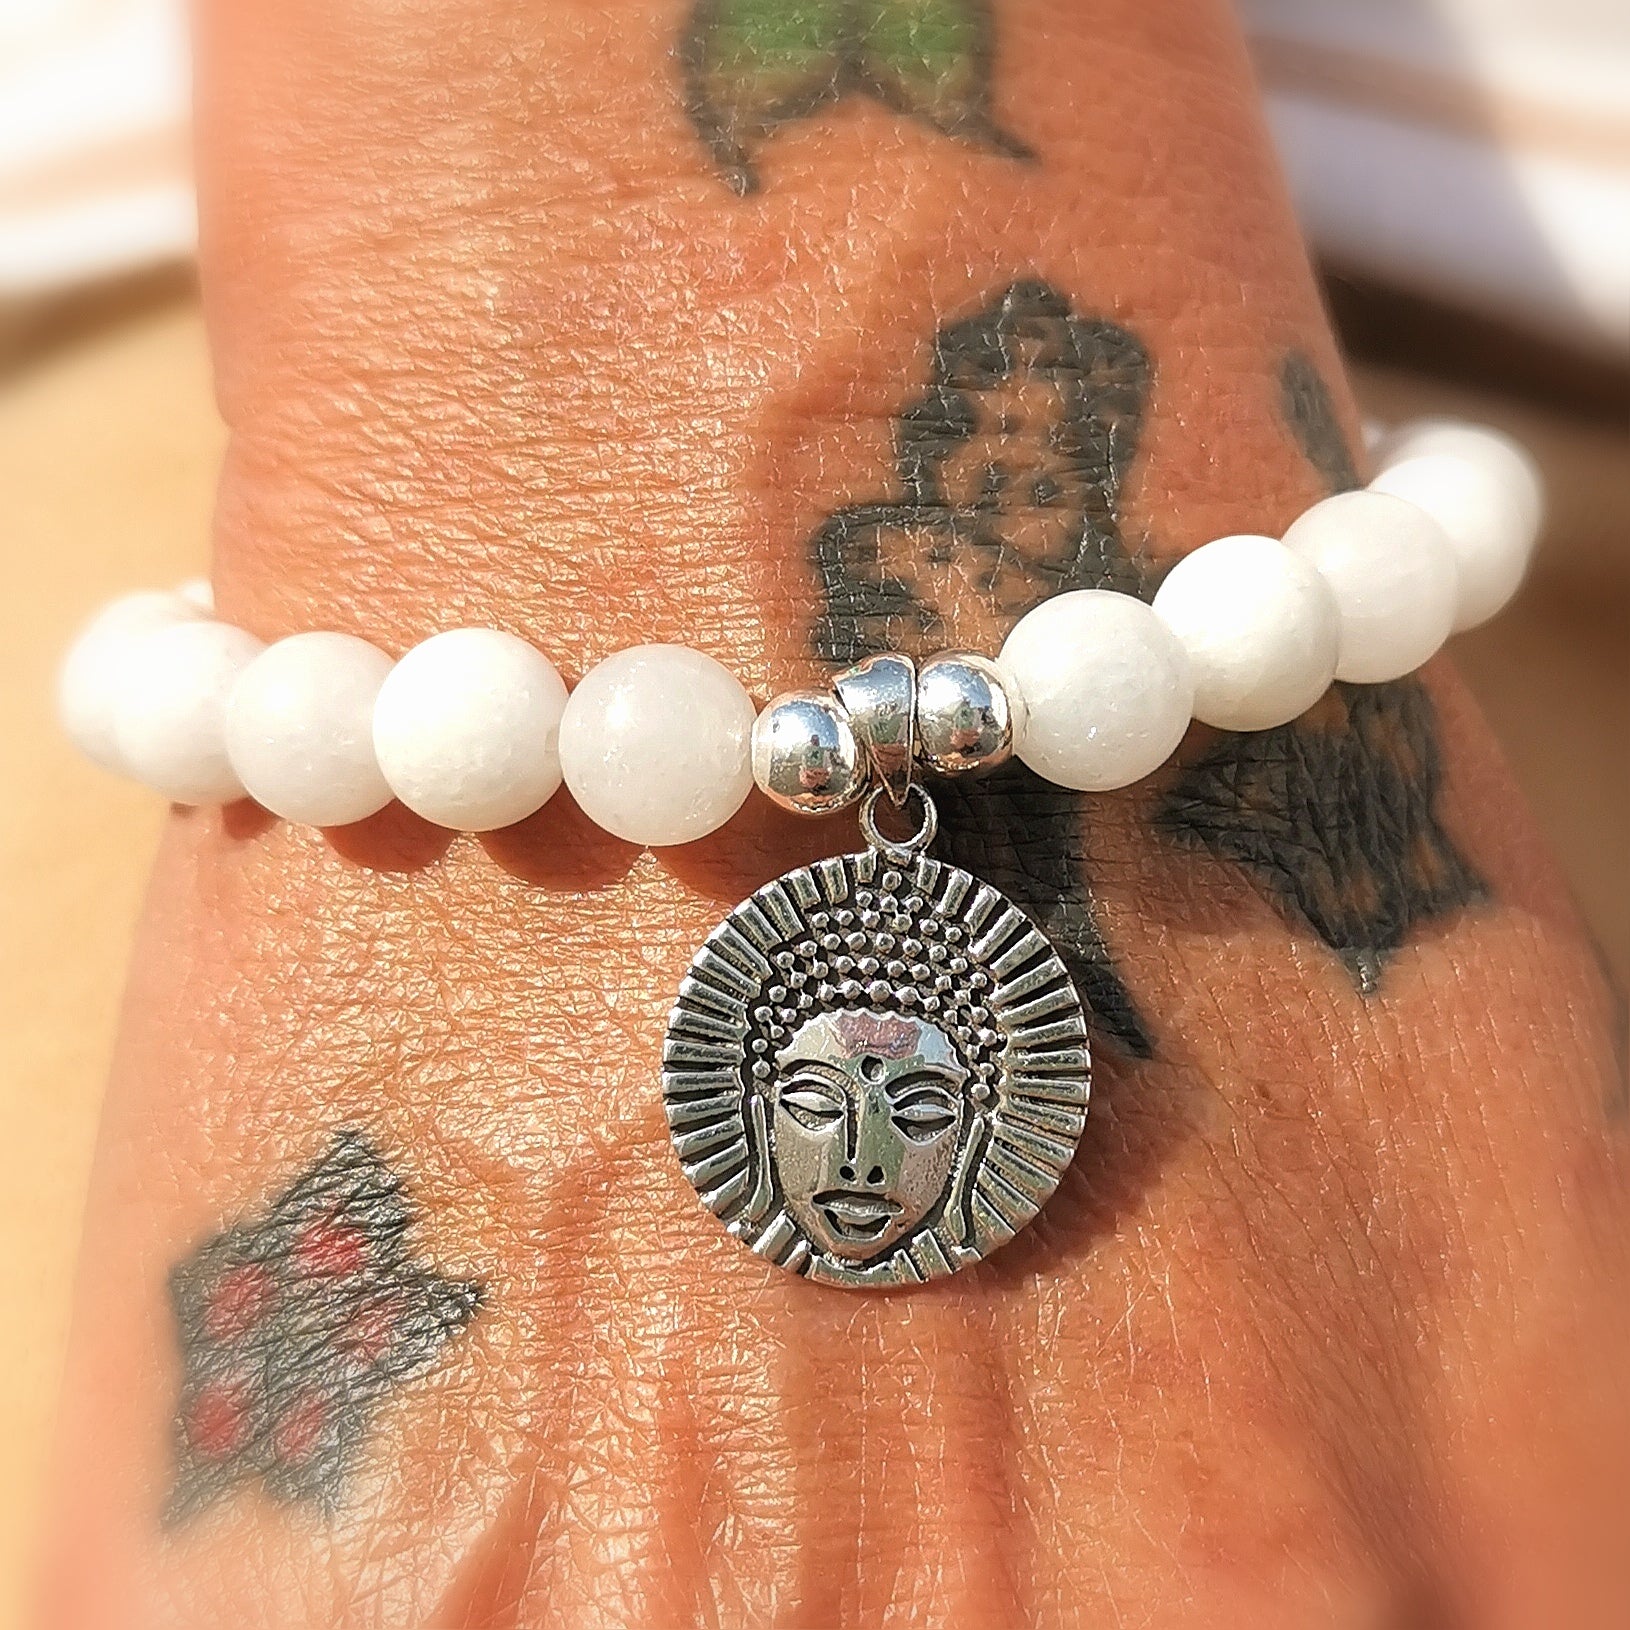 Buddha Karma Armband weisser Achat, Friedensachat, #beingpeace - im Frieden, samaki originals Karmaarmband für Glück und Segen, mallorca reiki yoga